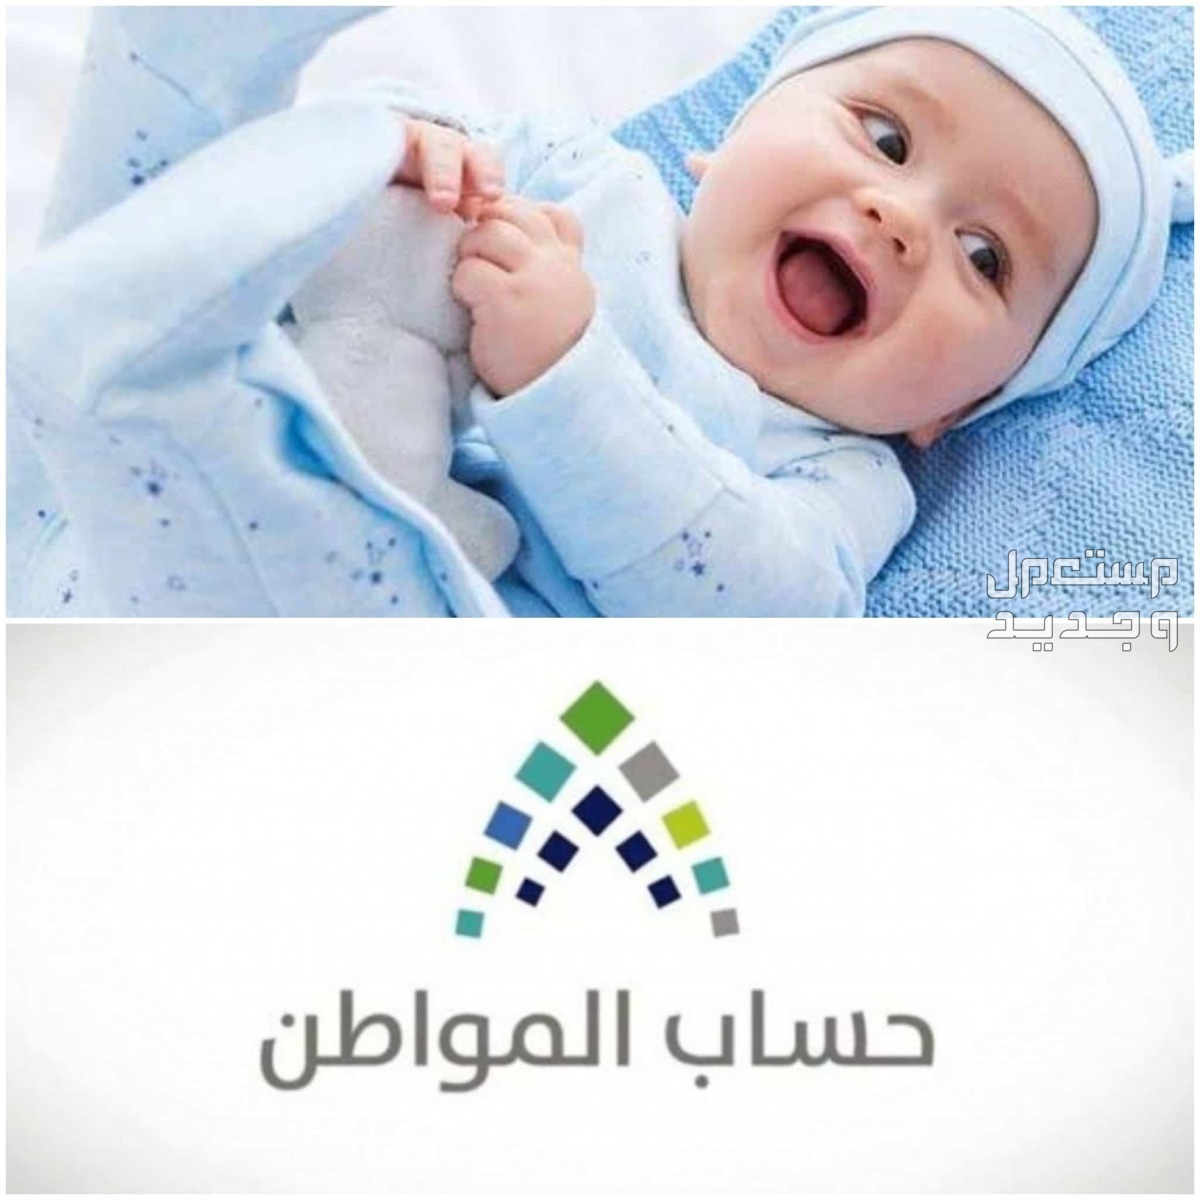 طريقة تسجيل المولود الجديد في حساب المواطن 1445 في الكويت تسجيل المولود الجديد في حساب المواطن